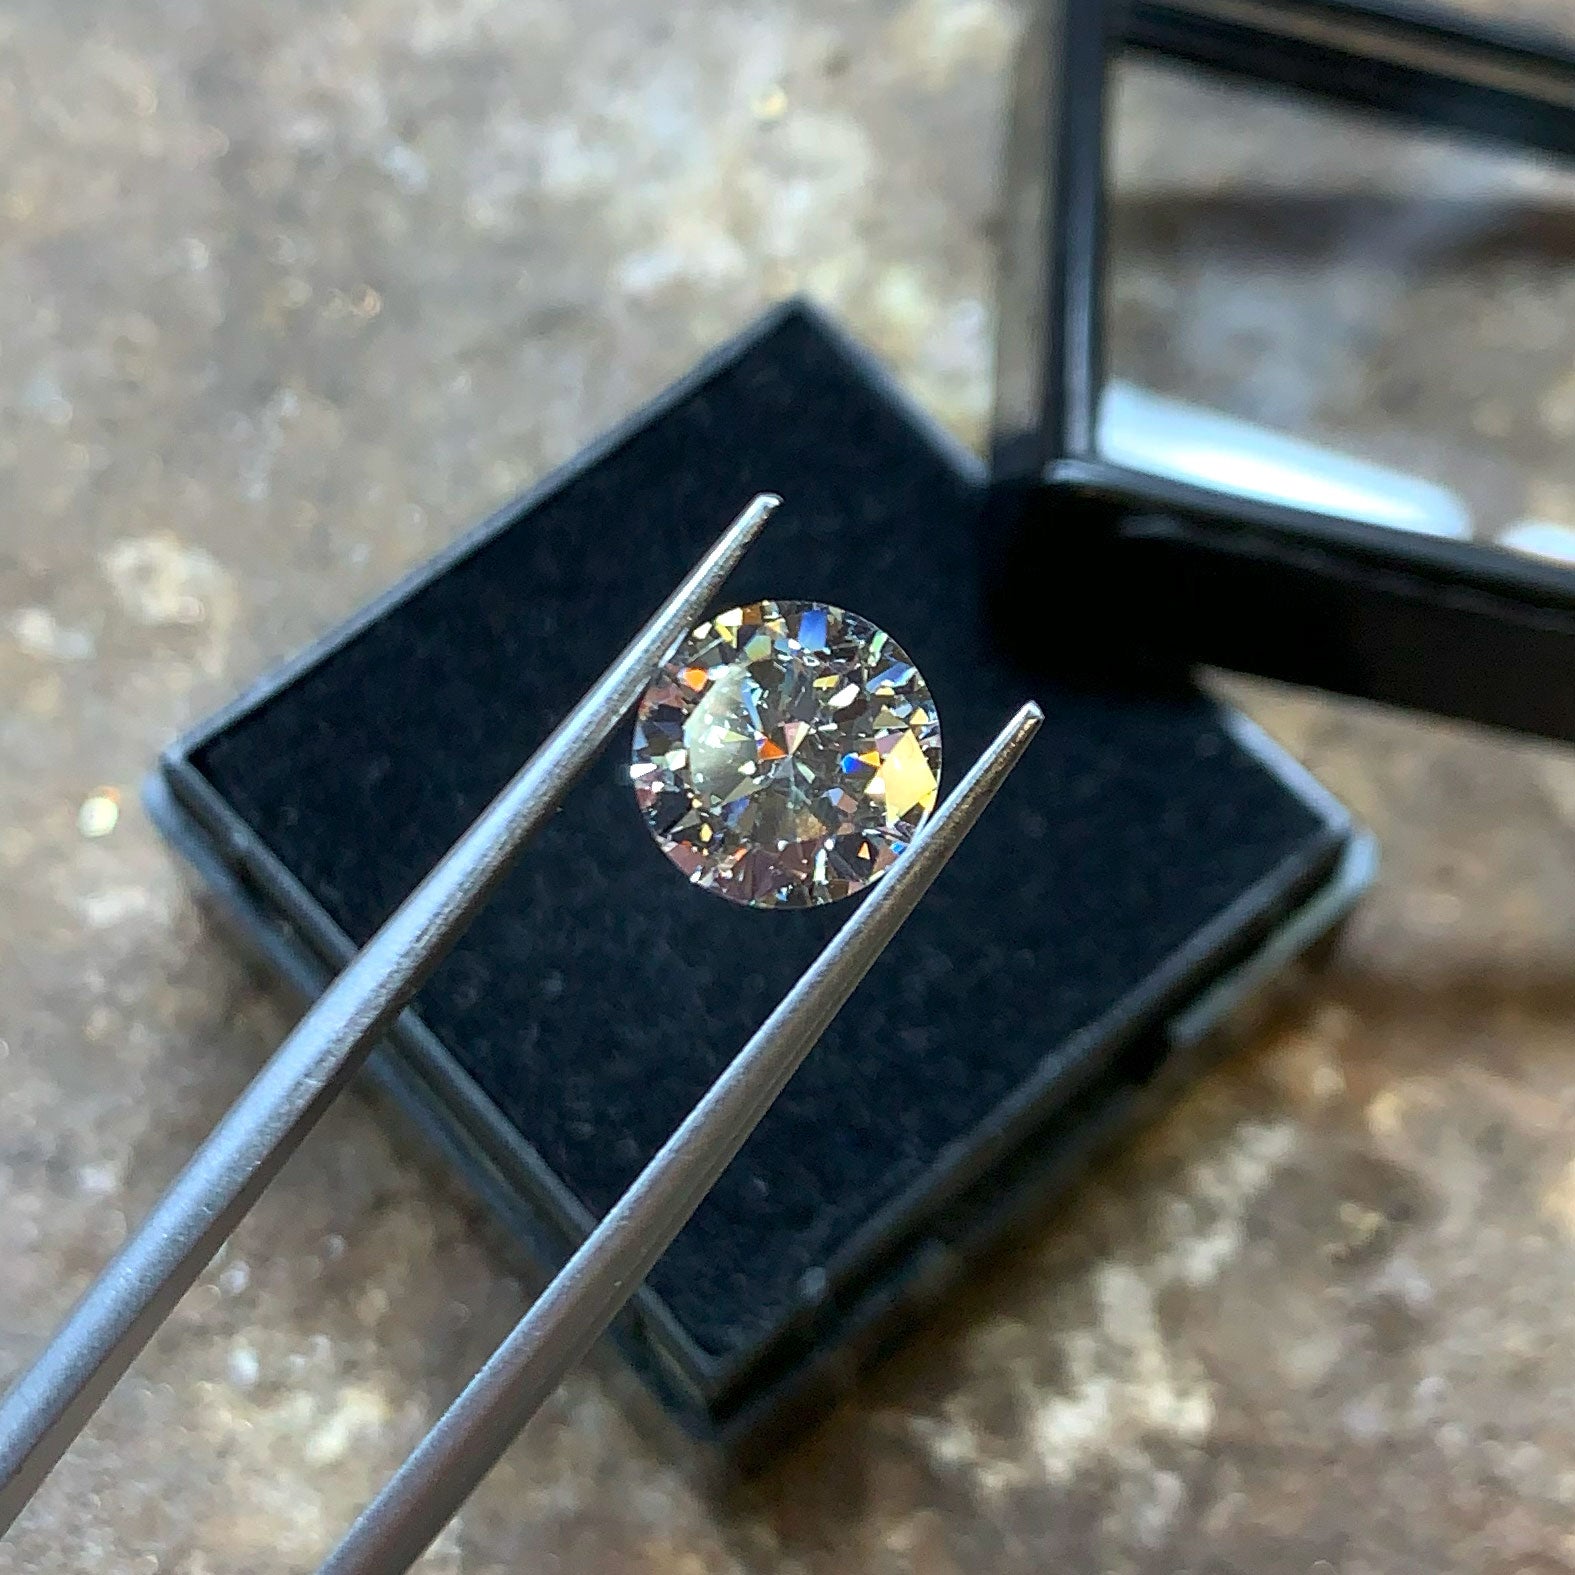 Losse briljant geslepen diamant tussen een pincet in het atelier.